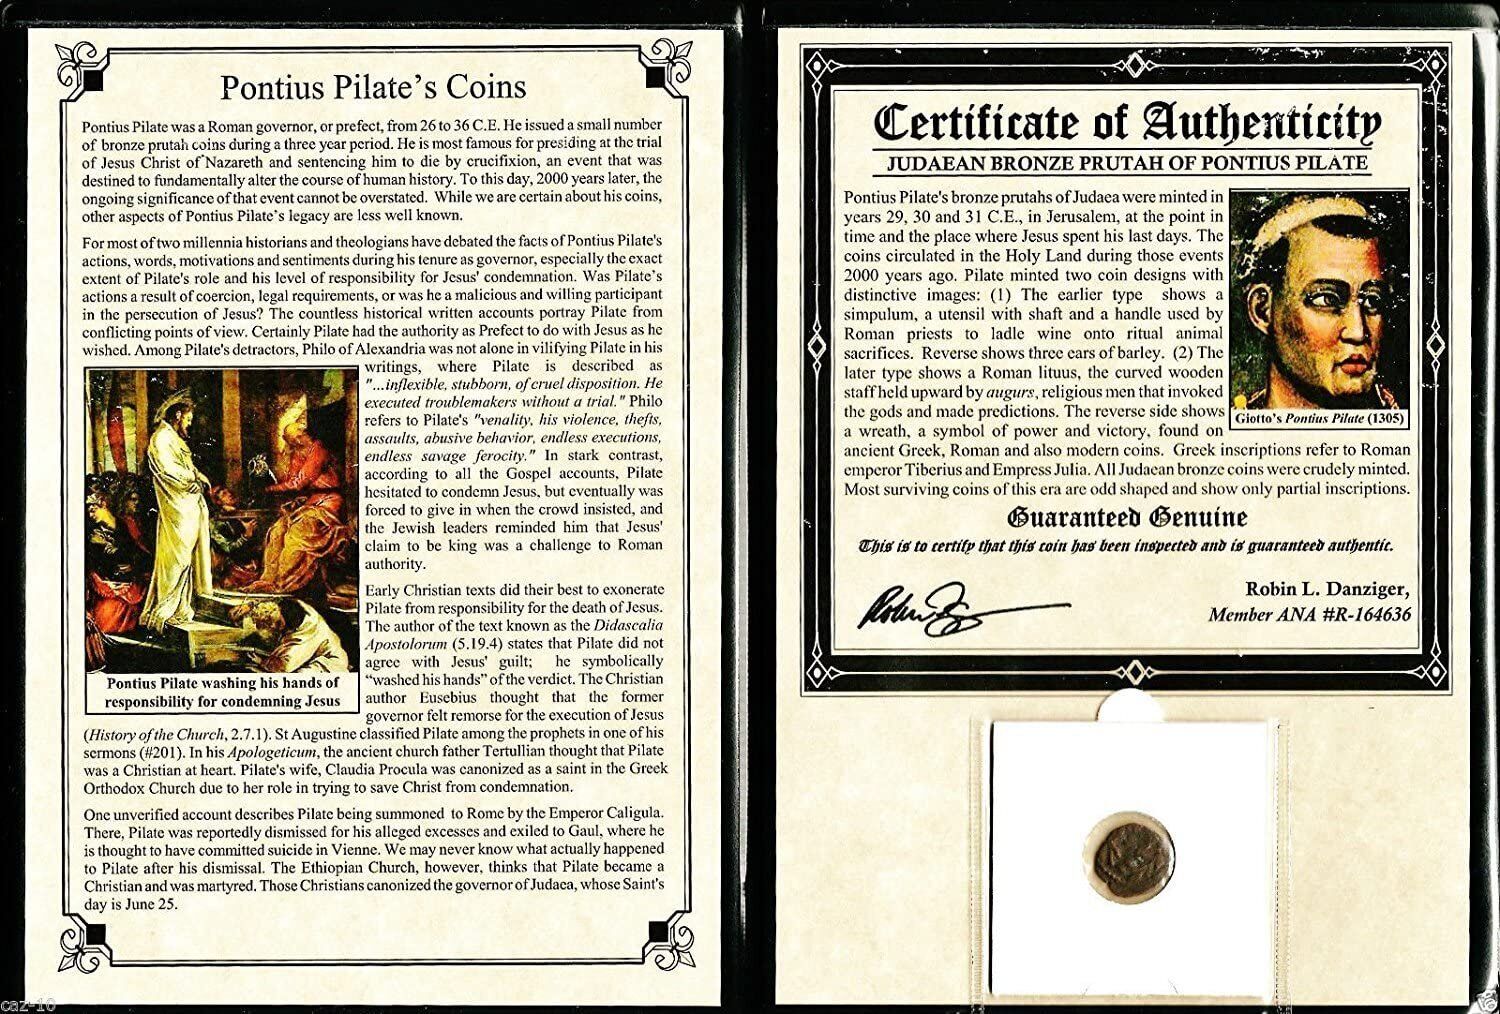 Pontius Pilate Coin Bronze Prutah Album. Certified Authentic.